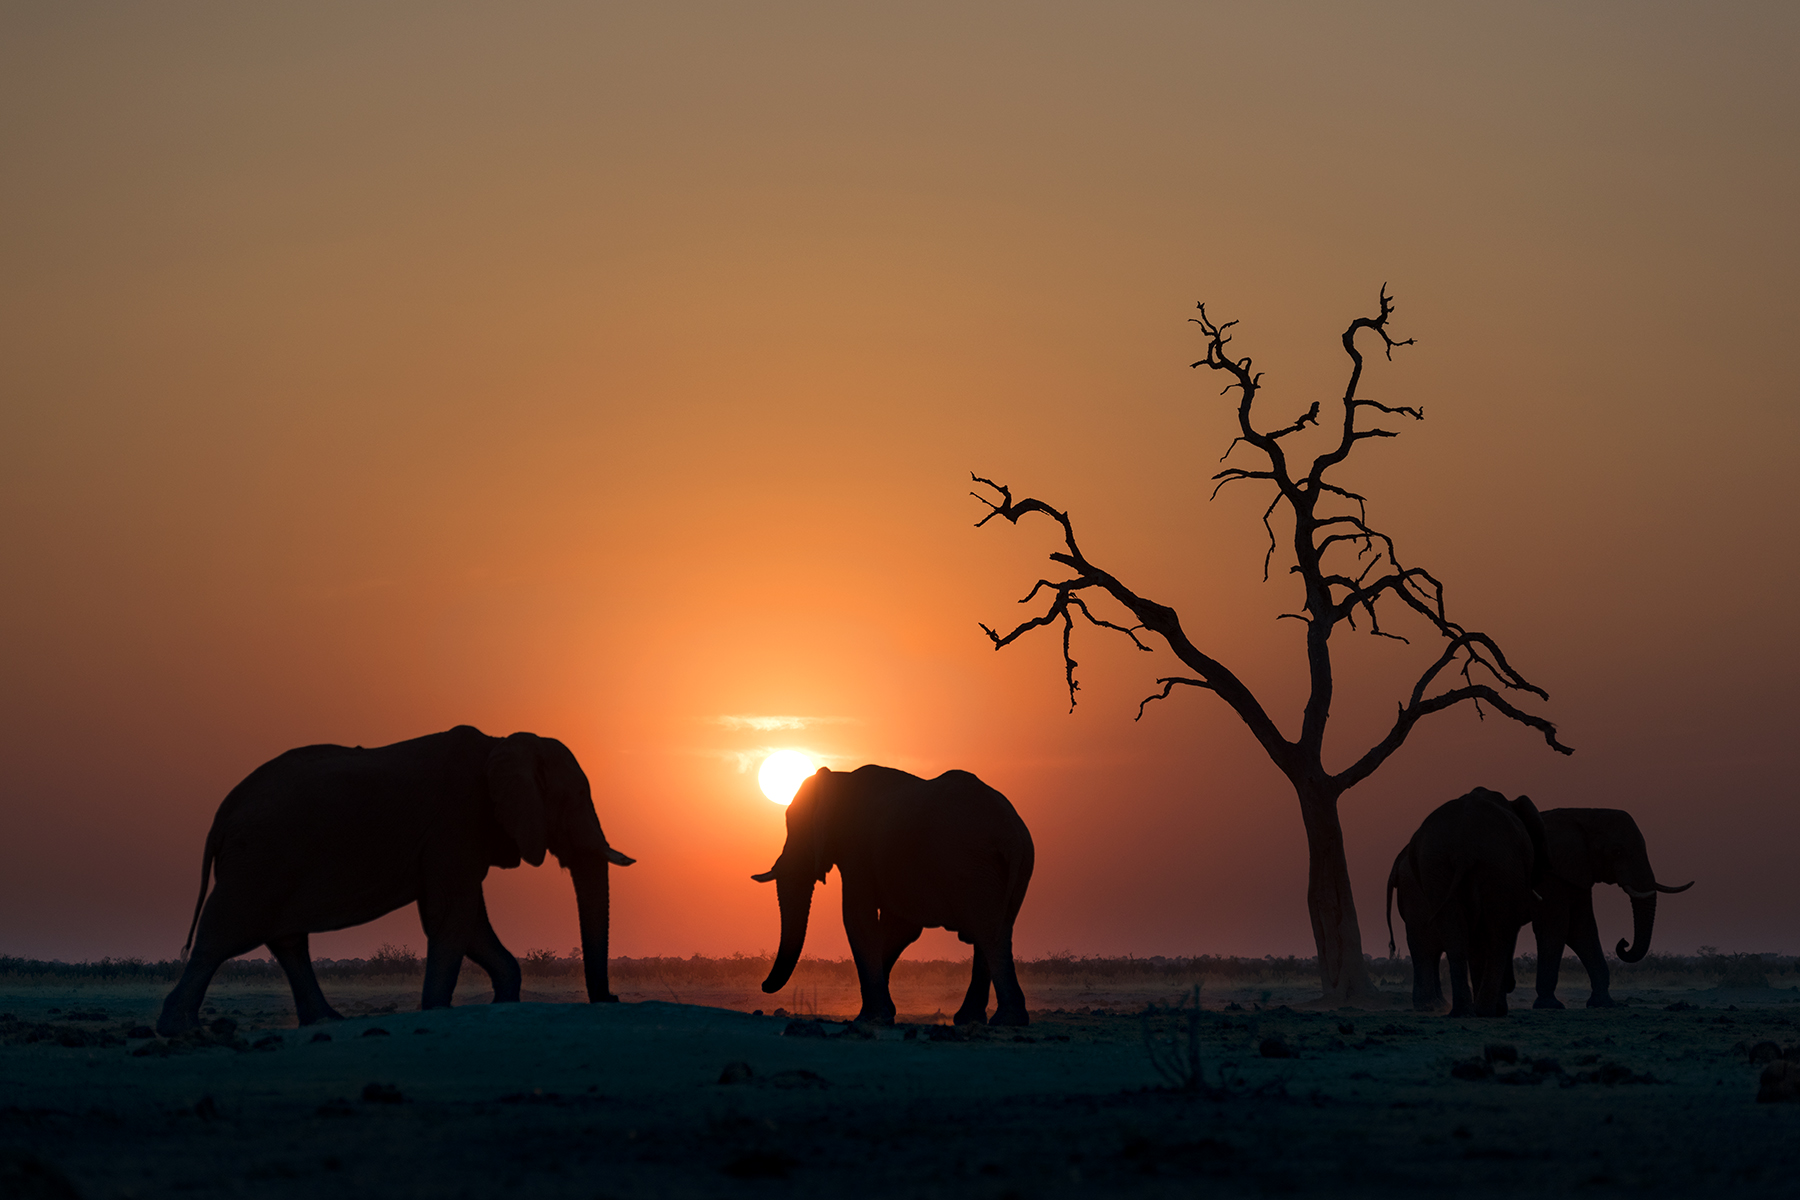 McLennan_Africa_wildlife16_0010.jpg